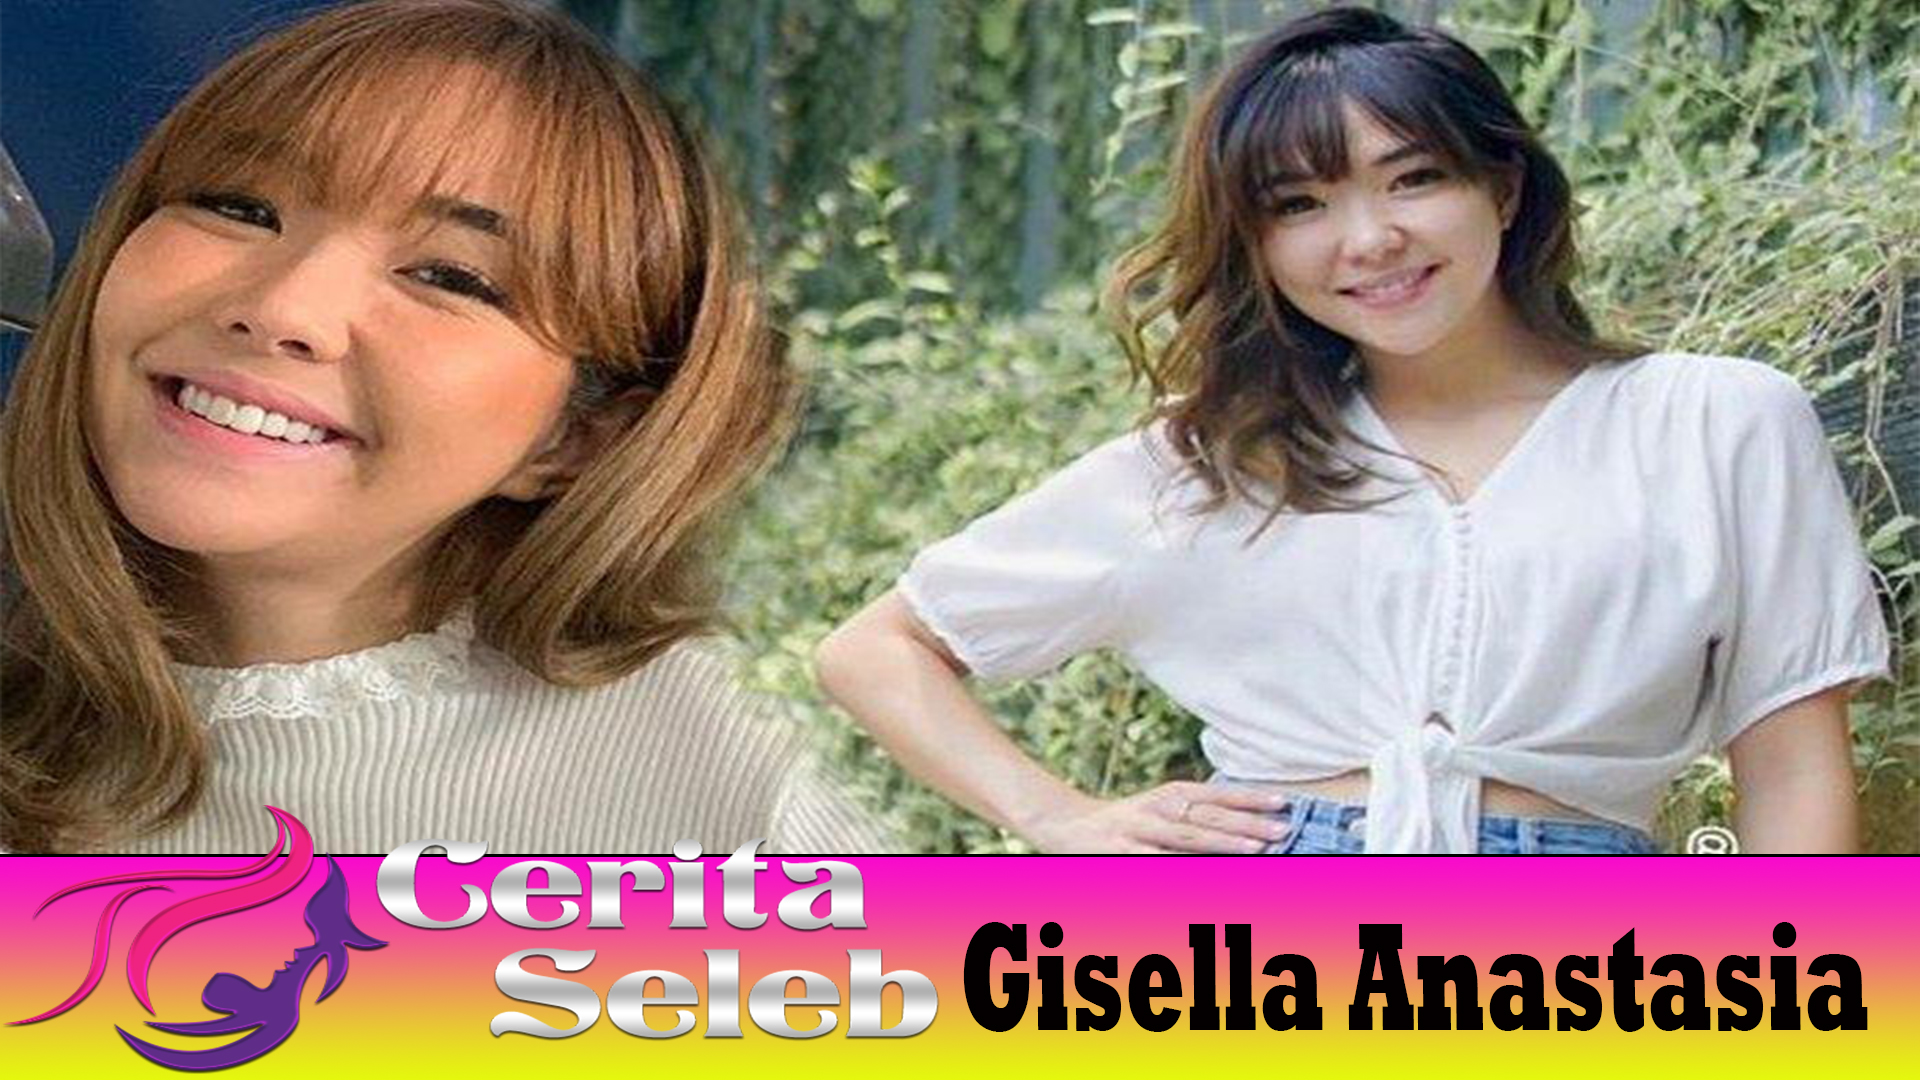 Gisella Anastasia Kisah Kesuksesan Perjalanan Seorang Bintang